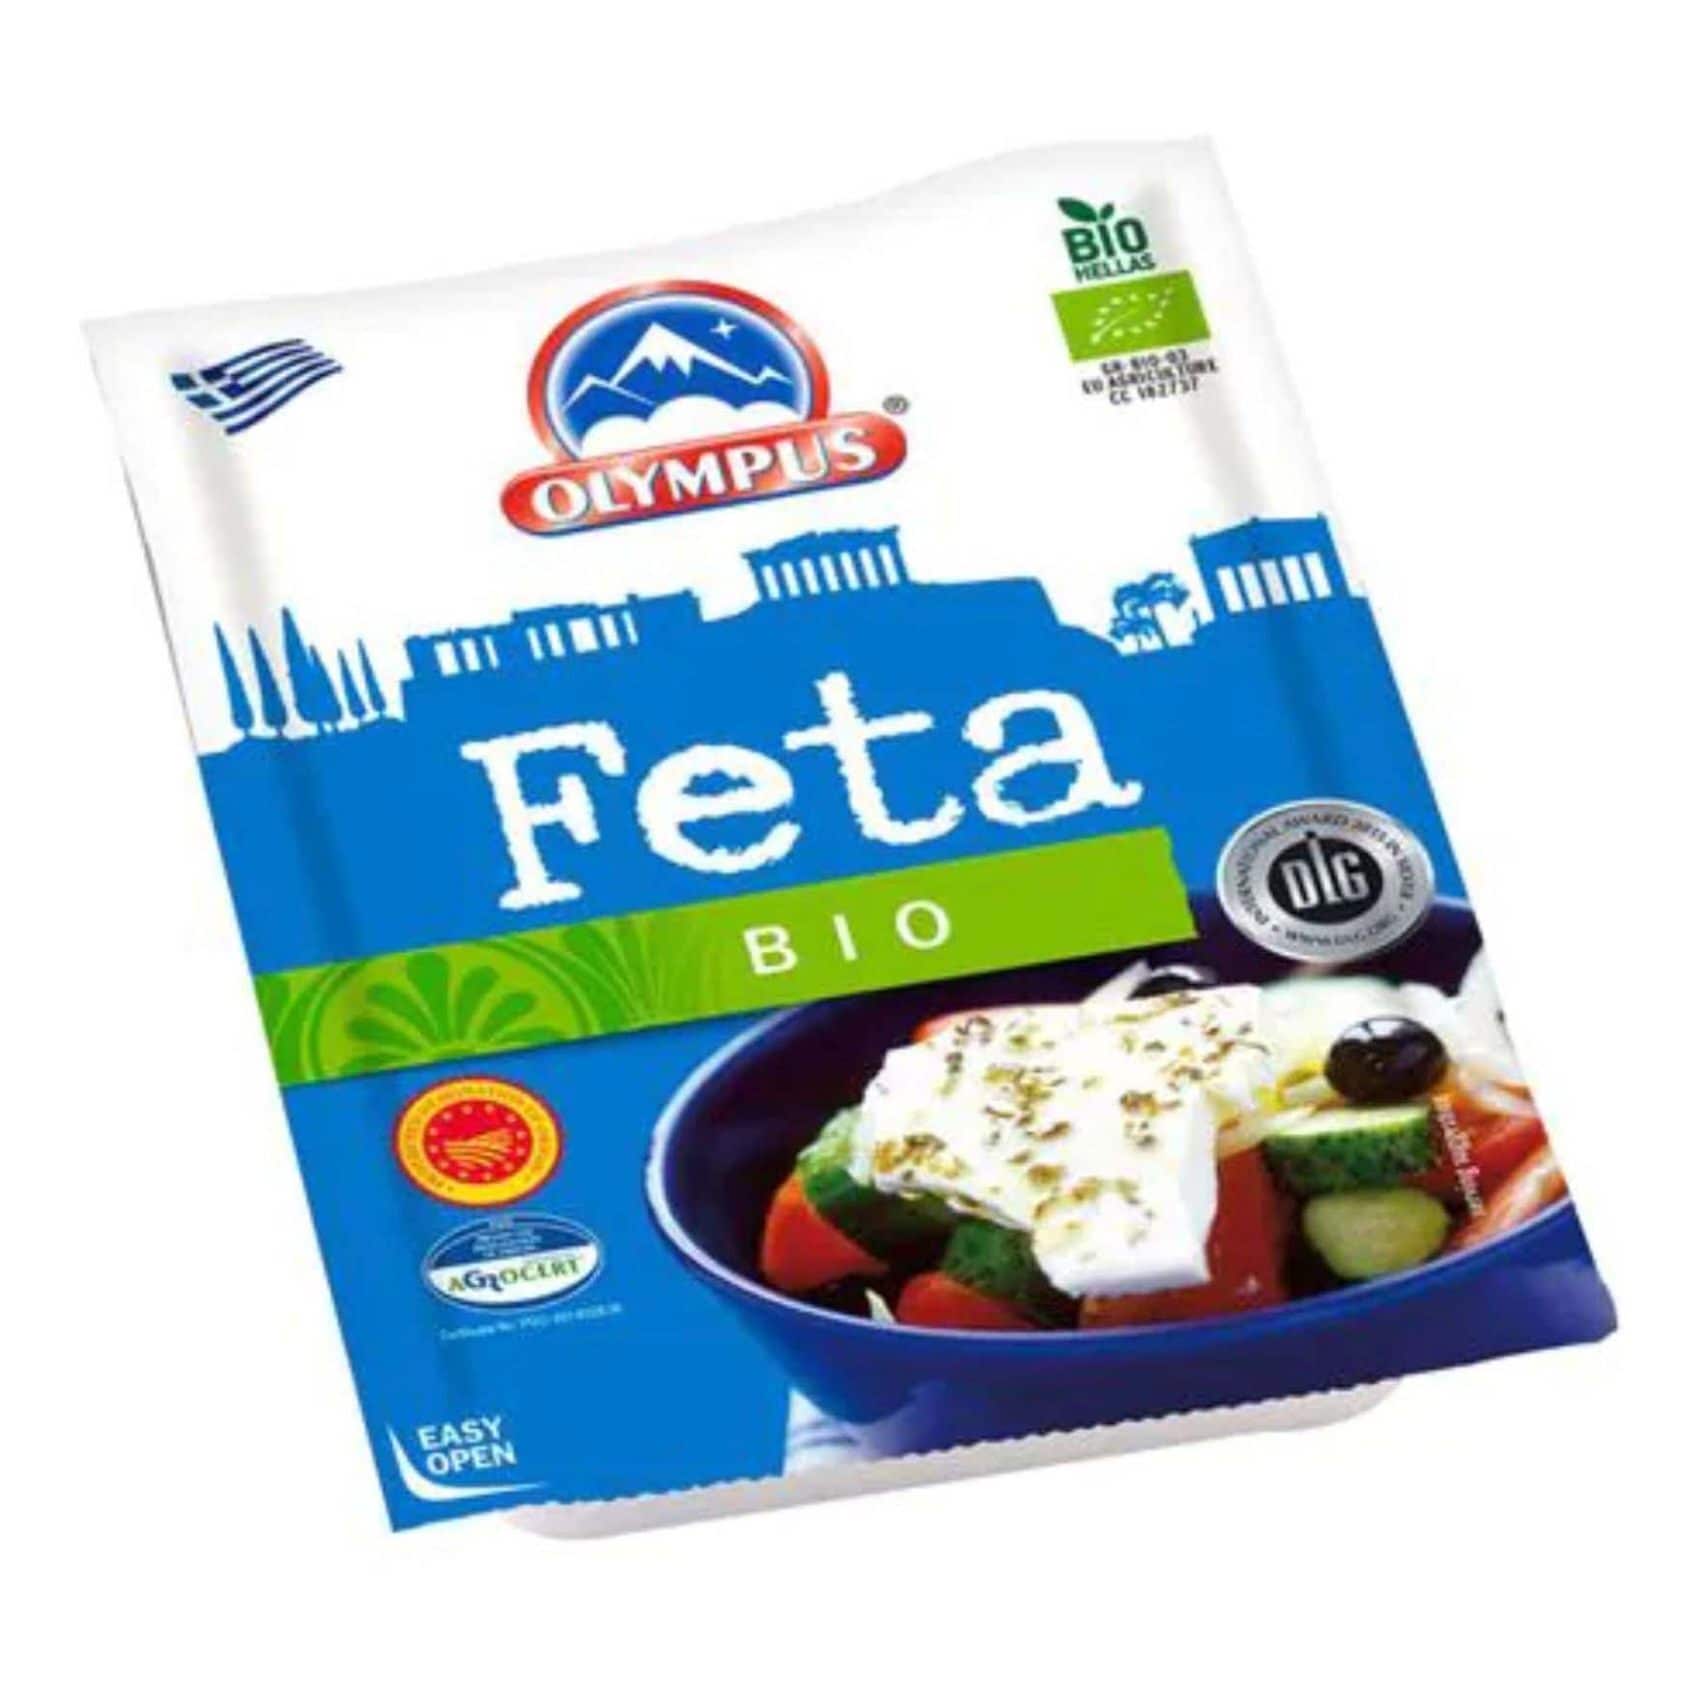 Buy Olympus Organic Feta Pdo Cheese 150g Online - Shop Bio & Organic Food  on Carrefour UAE